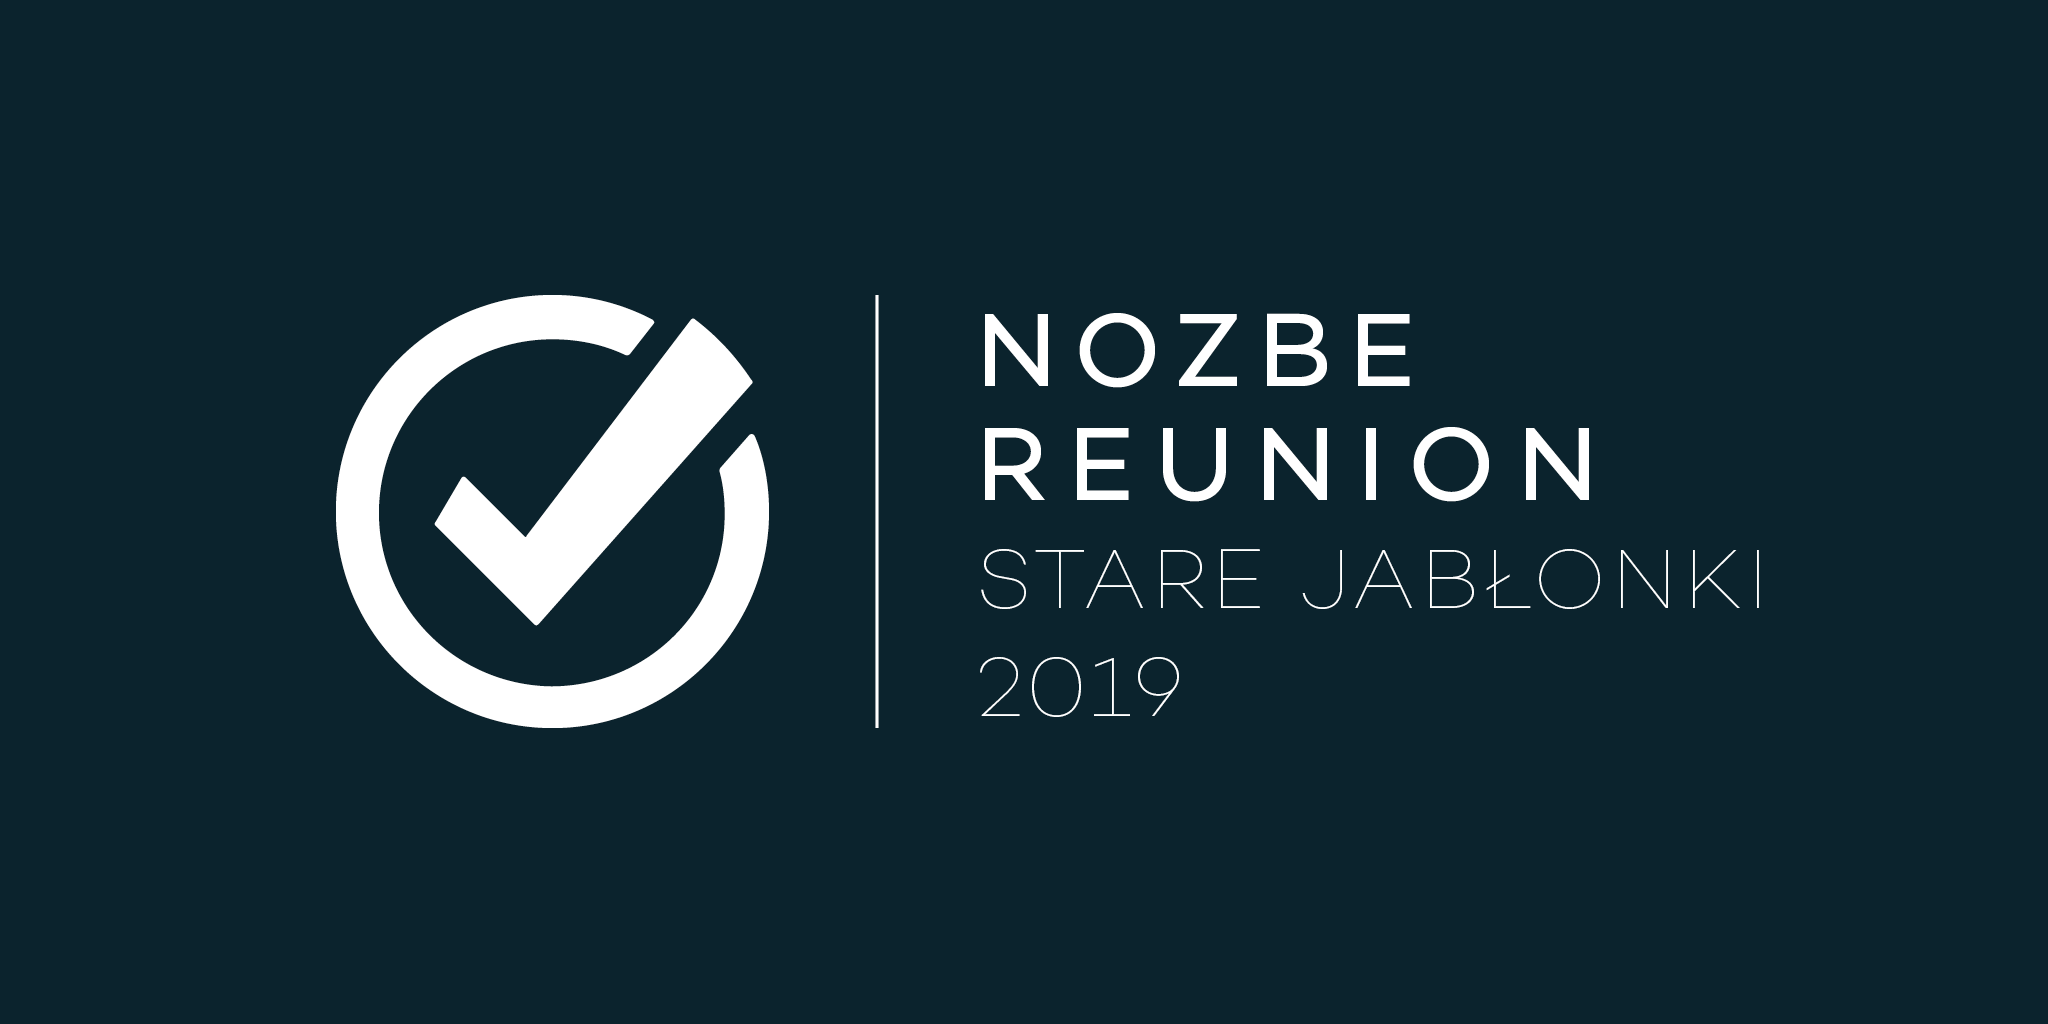 Reunión Nozbe - Masuria (del 8 al 12 de Abril de 2019) - Desaceleración en el servicio al cliente